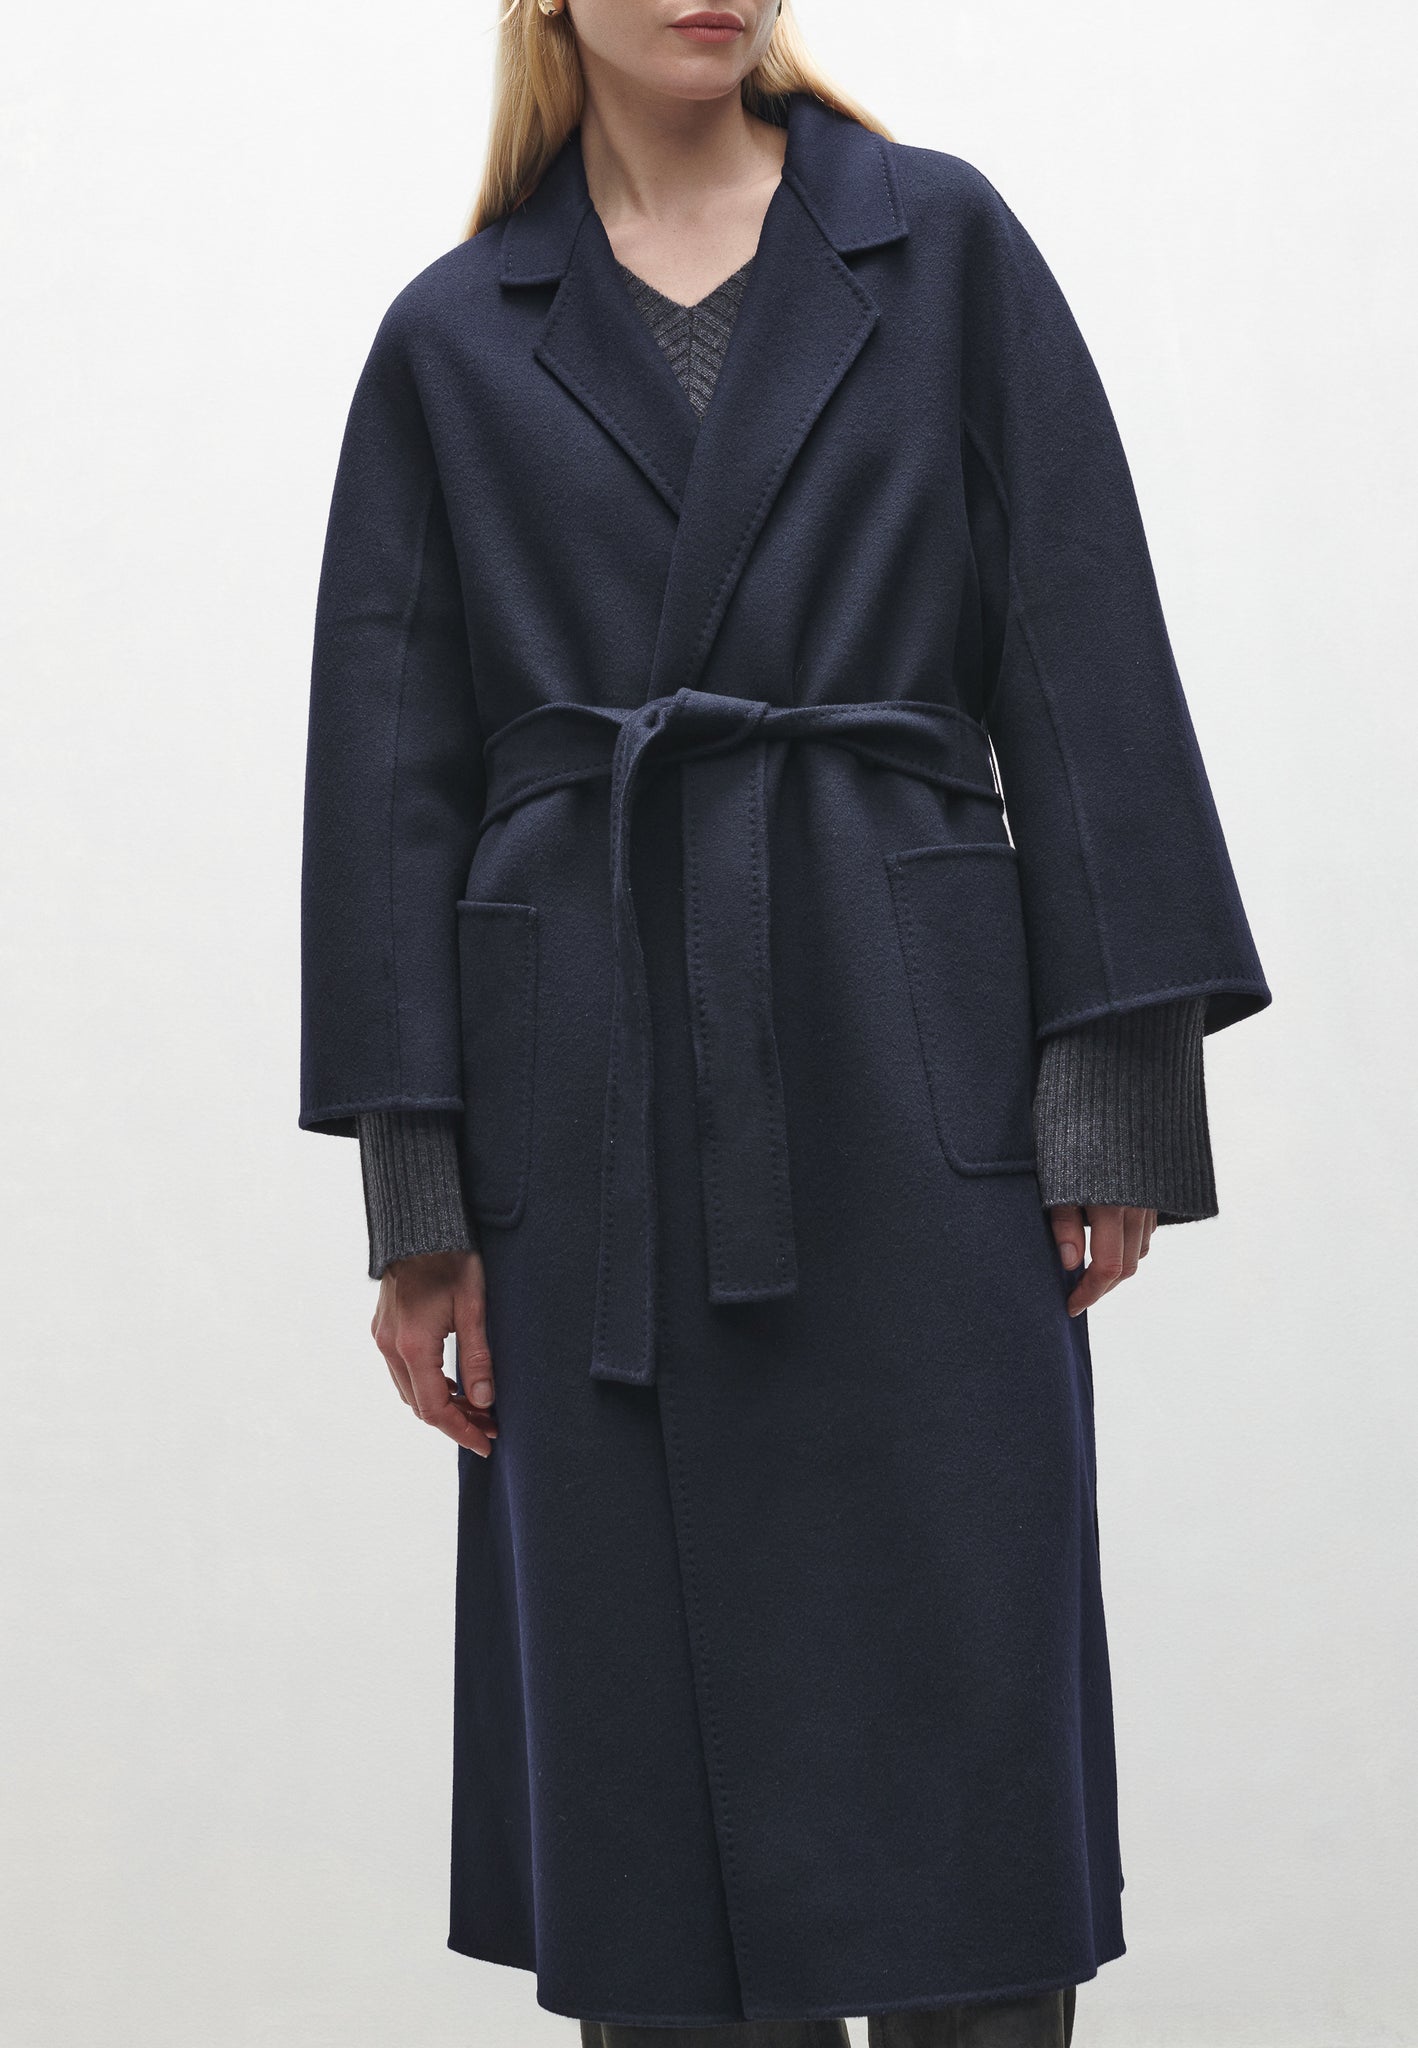 SEGURET | Long wool coat